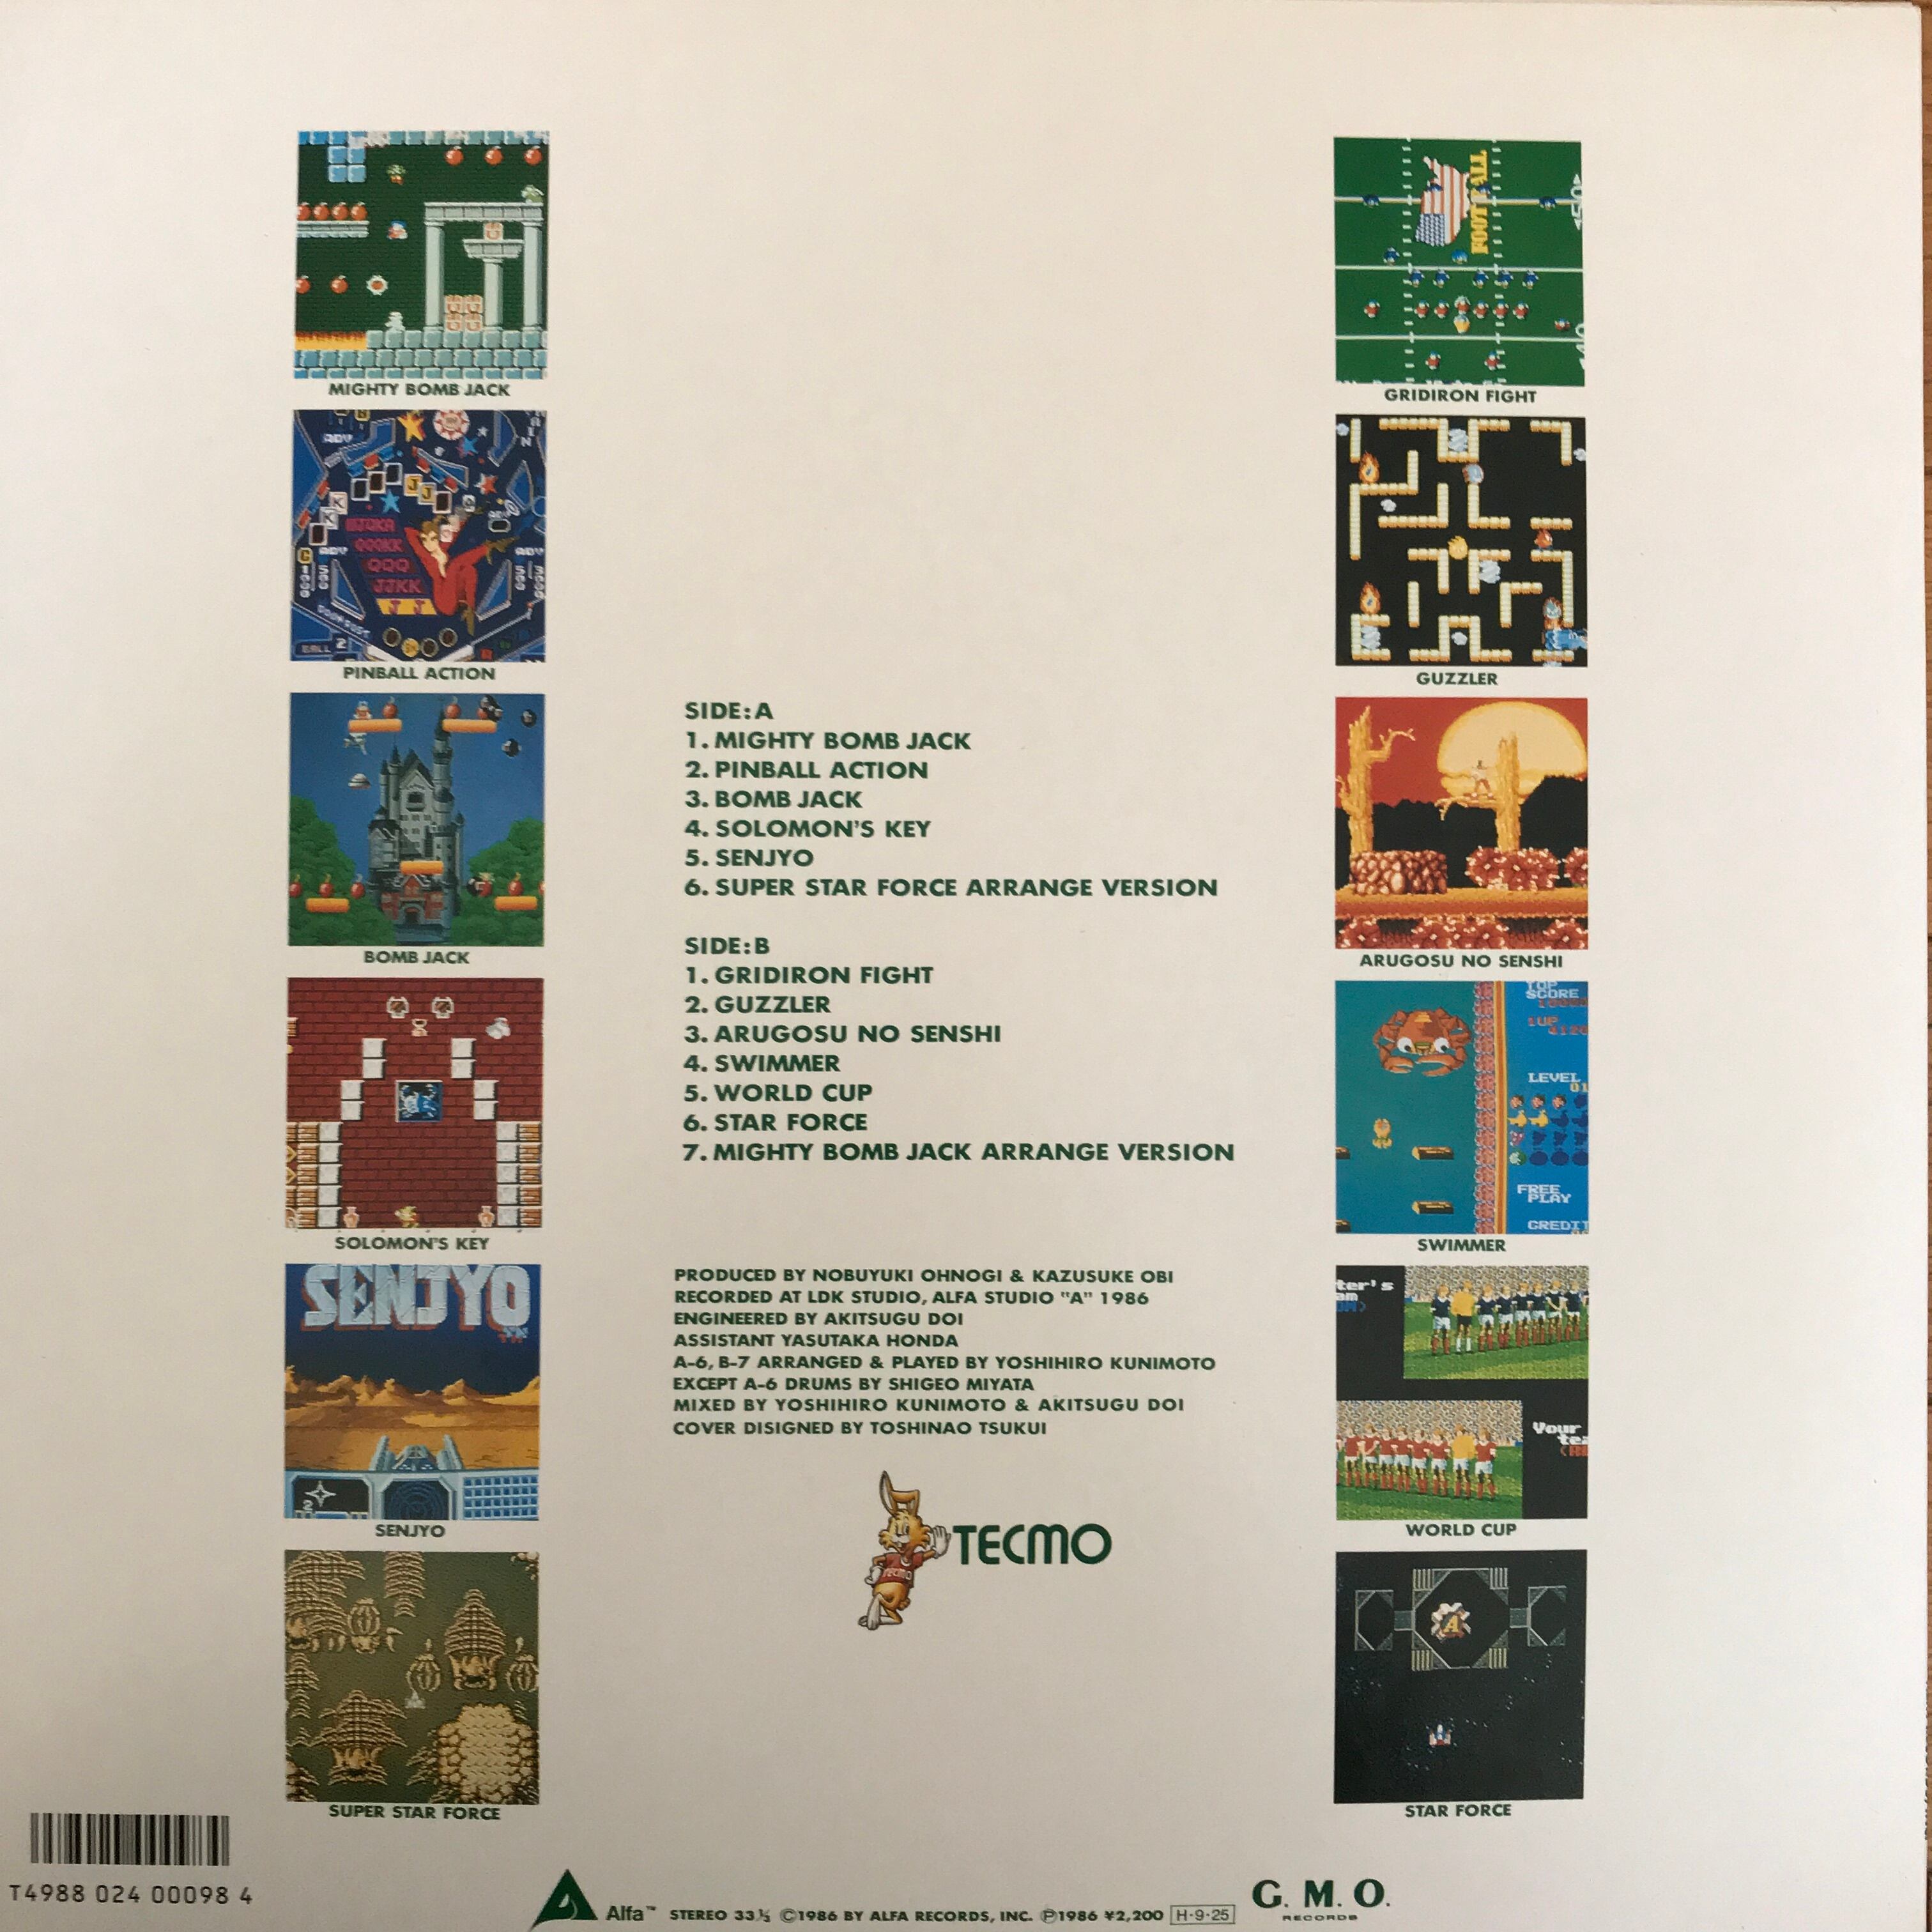 テクモ・ゲーム・ミュージック / TECMO GAME MUSIC - CD